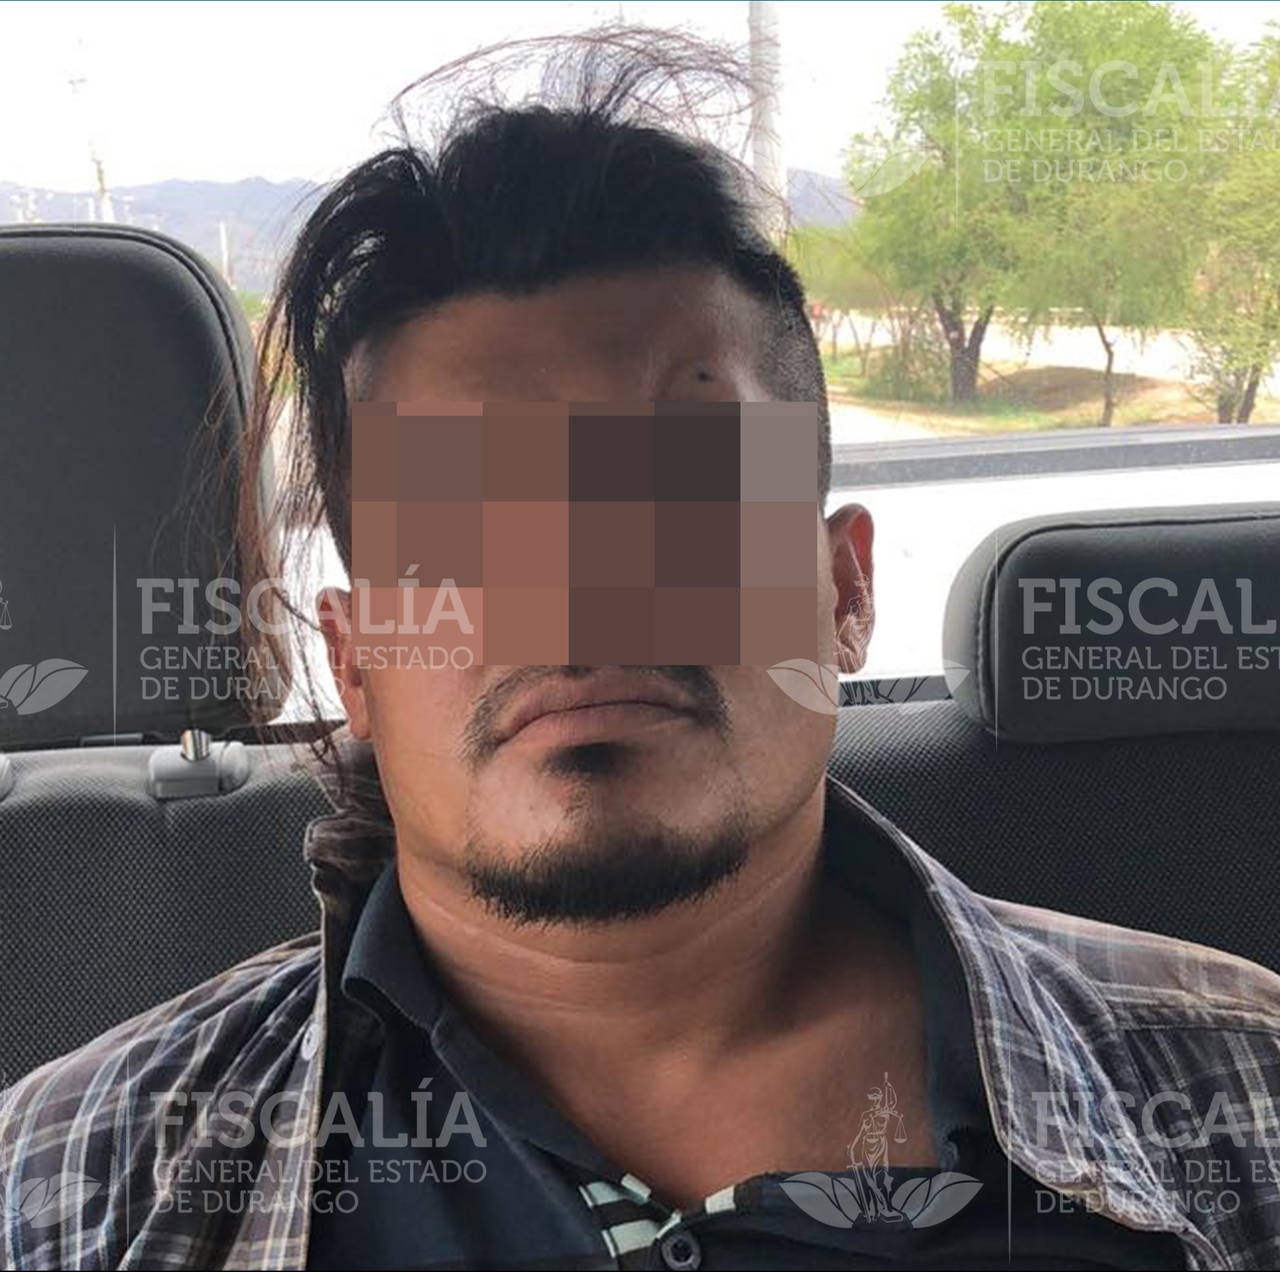 Secuestrador. Presunto secuestrador que operaba en La Laguna de Durango, cae en Chihuahua.